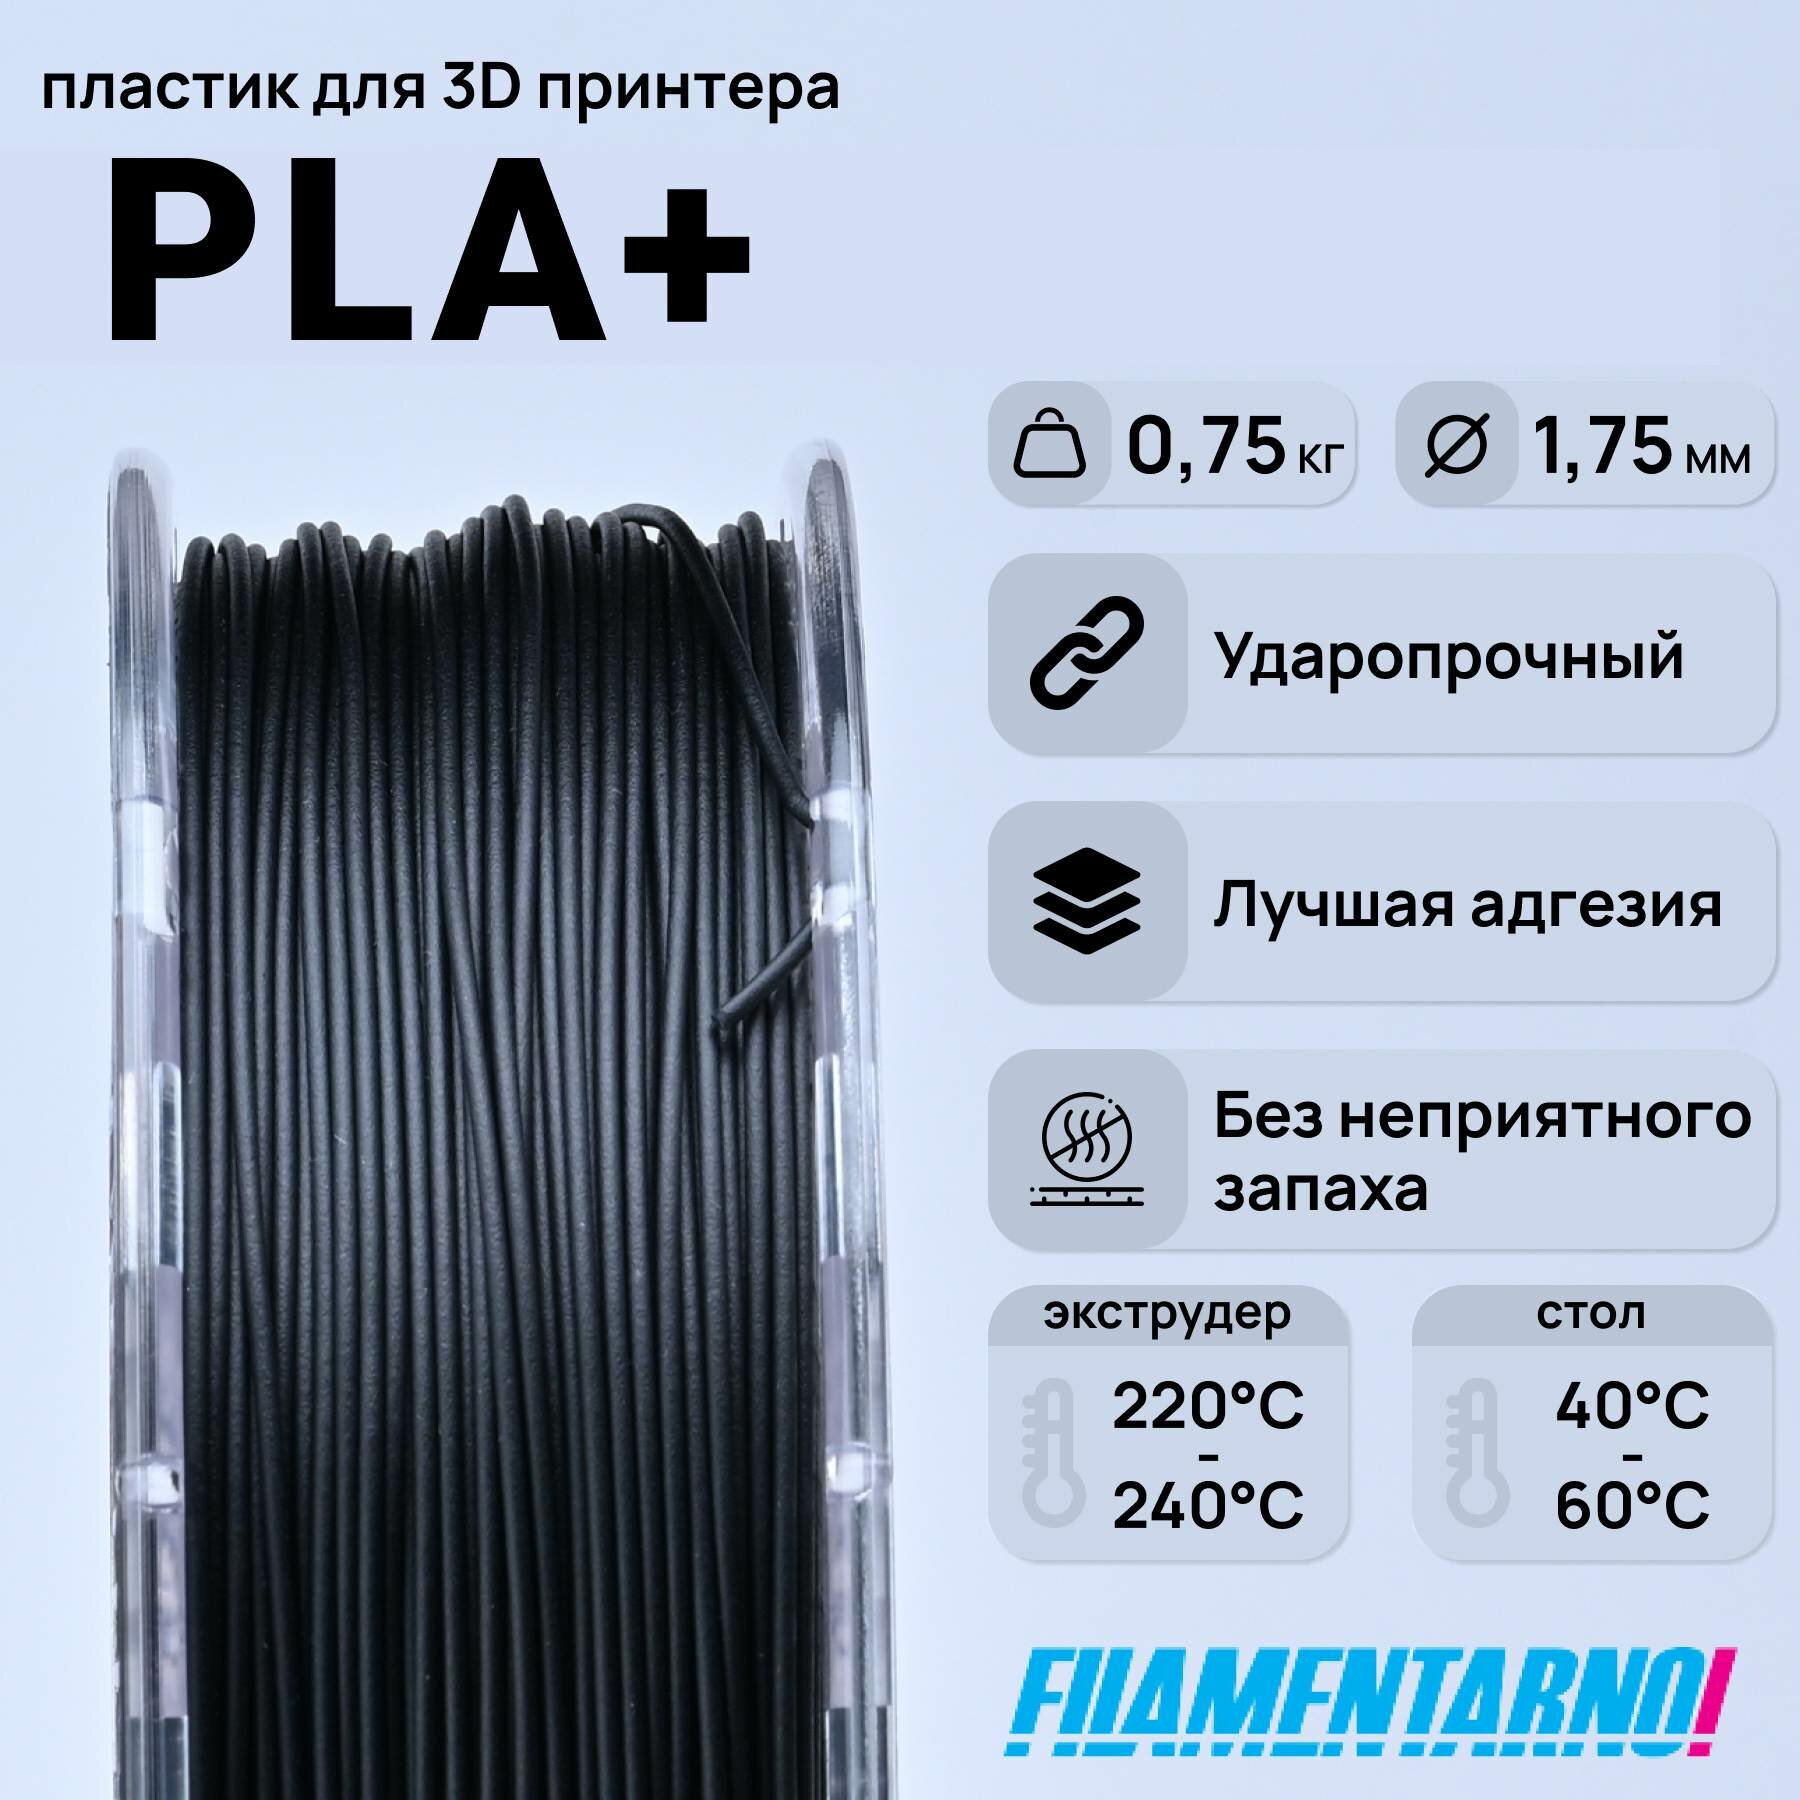 PLA+  750 , 1,75 ,  Filamentarno  3D-